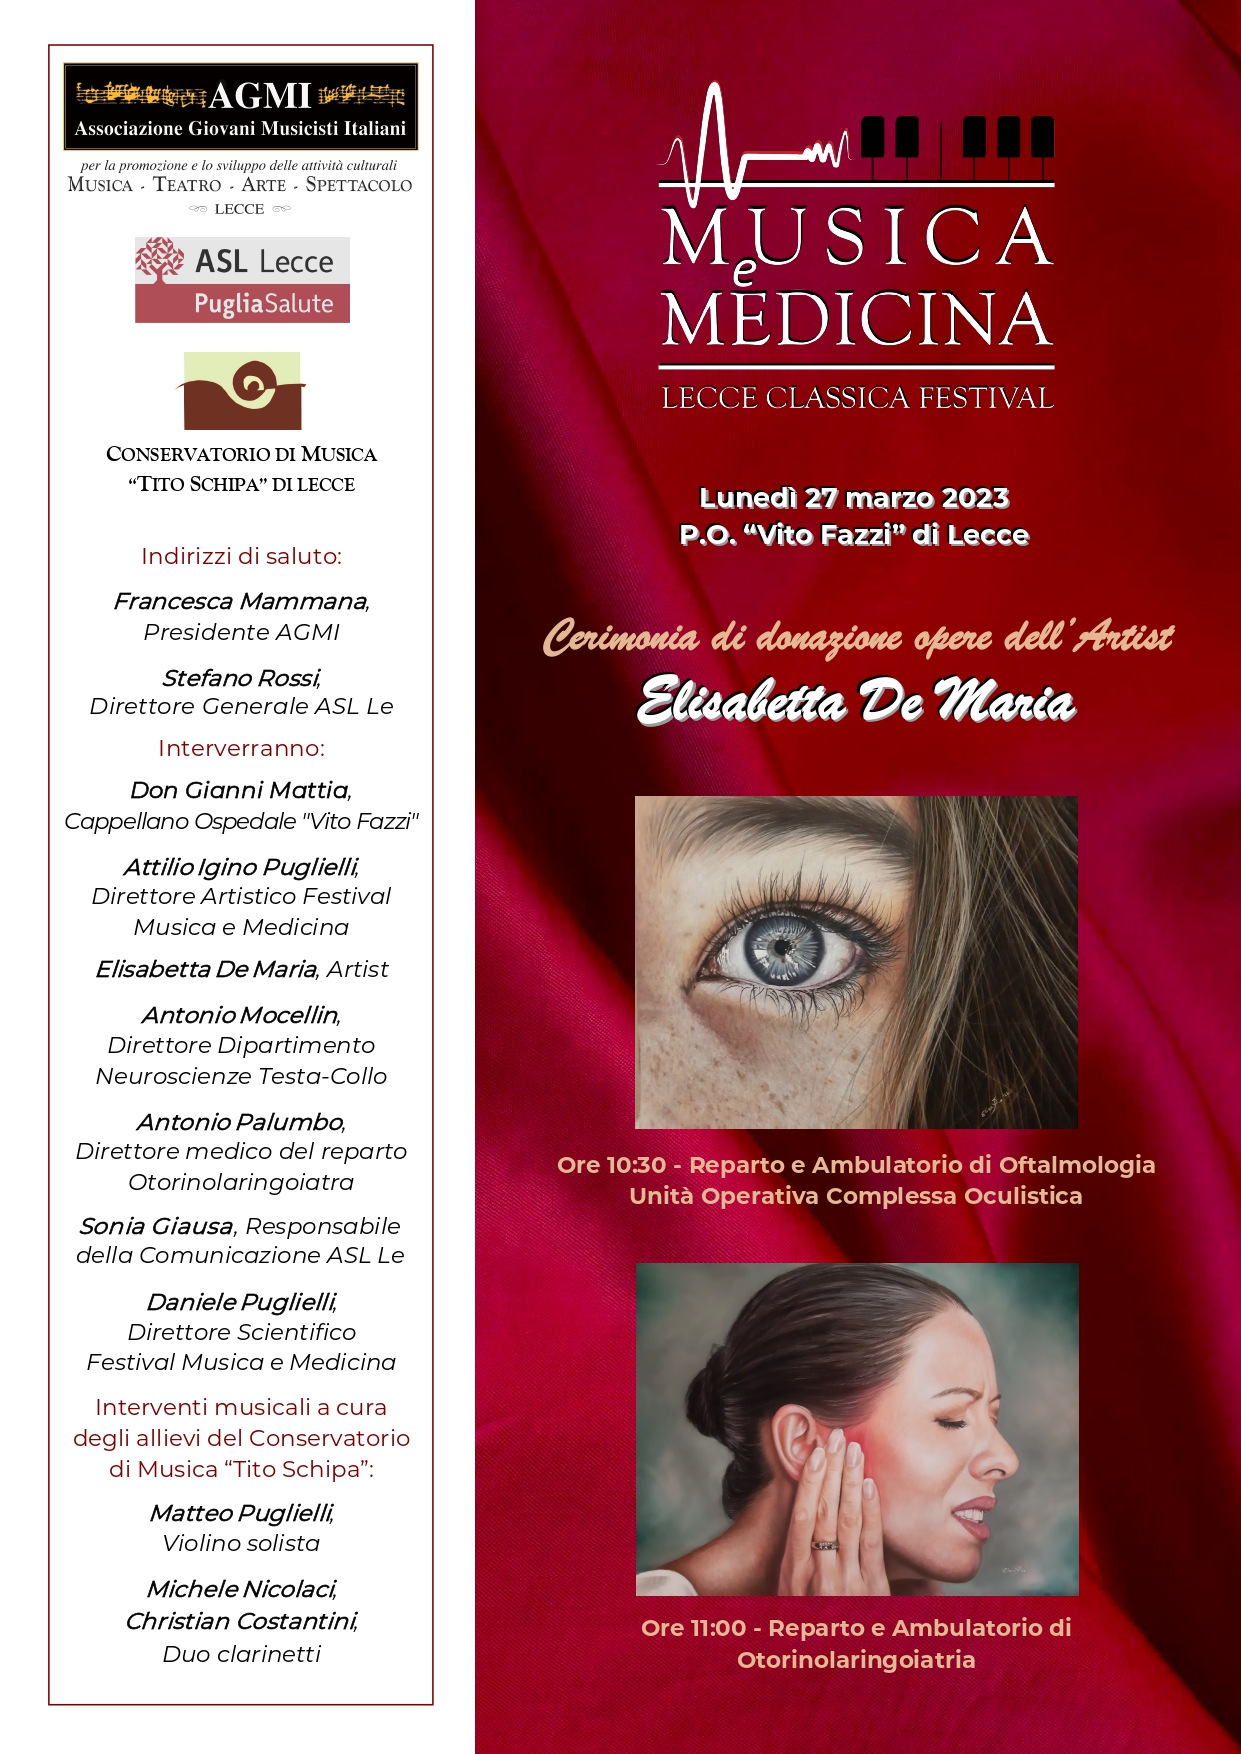 Lunedi 27 marzo al “Vito Fazzi” di Lecce Lecce Classica Festival “Musica e Medicina”.